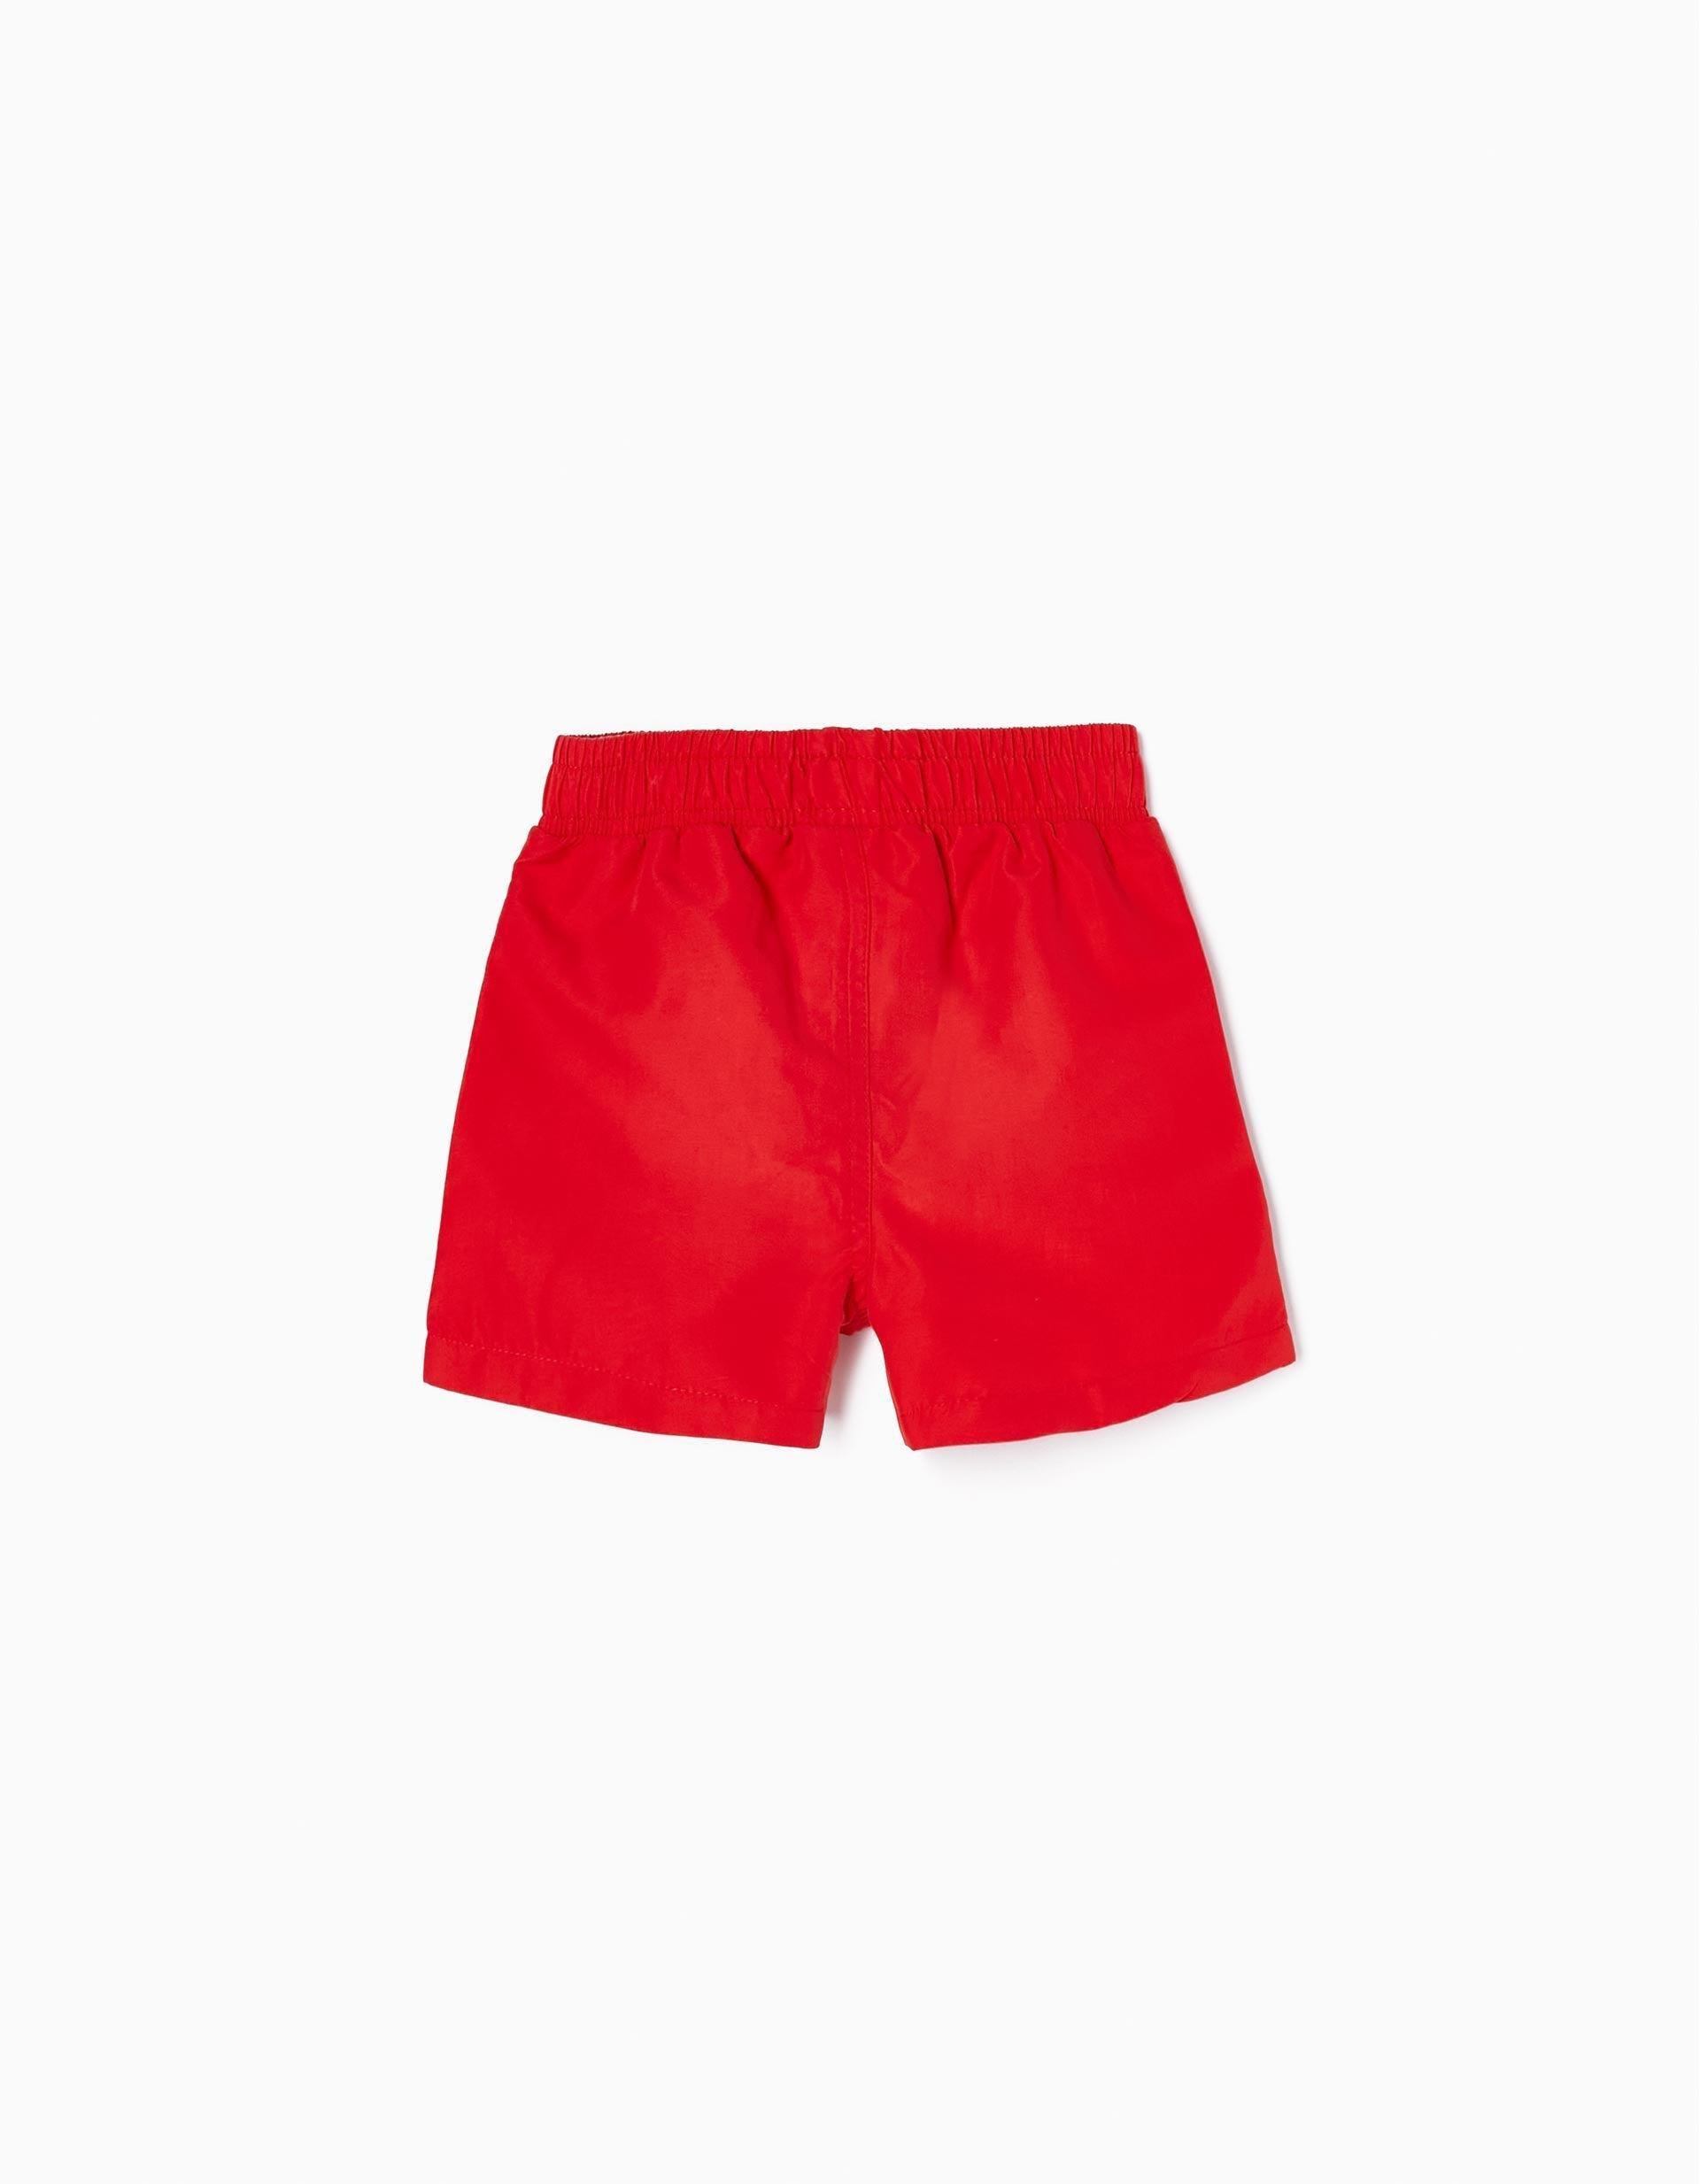 Zippy - Red UV 80 Protection Swim Shorts, Baby Boys